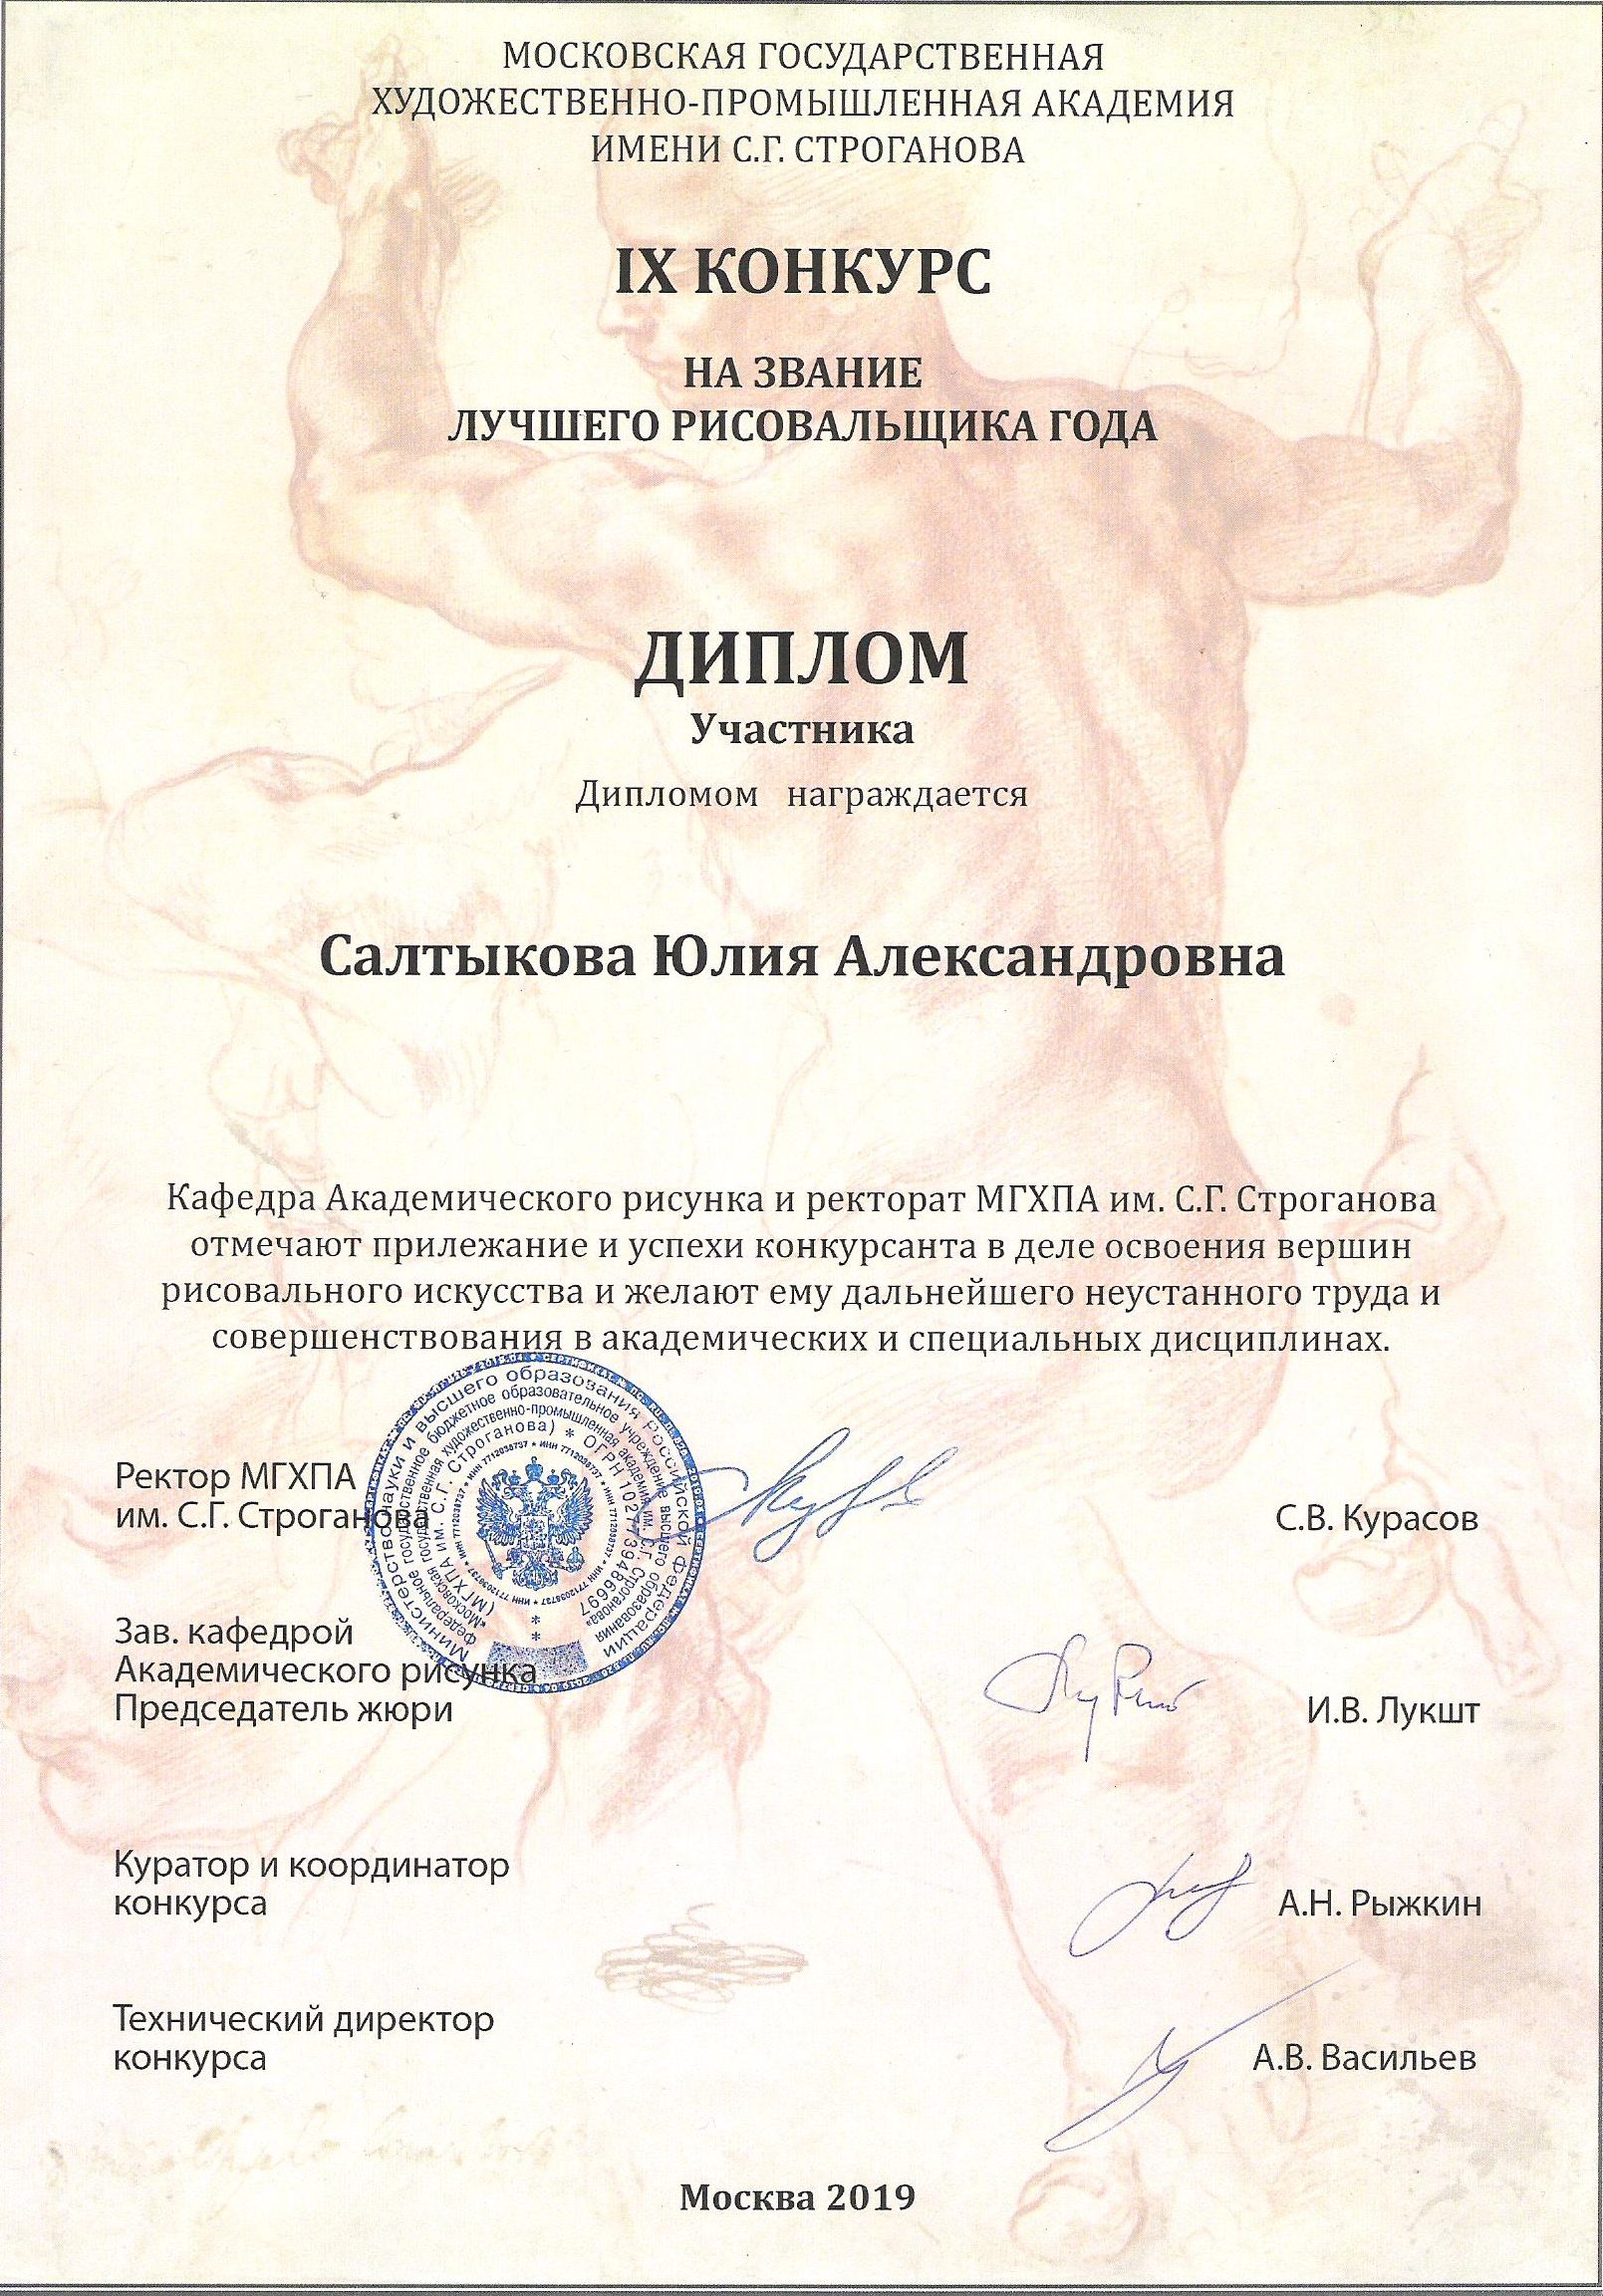 Диплом участника IX конкурса МГХПА имени С.Г. Строгонова на звание лучшего рисовальщика года, Москва 2019